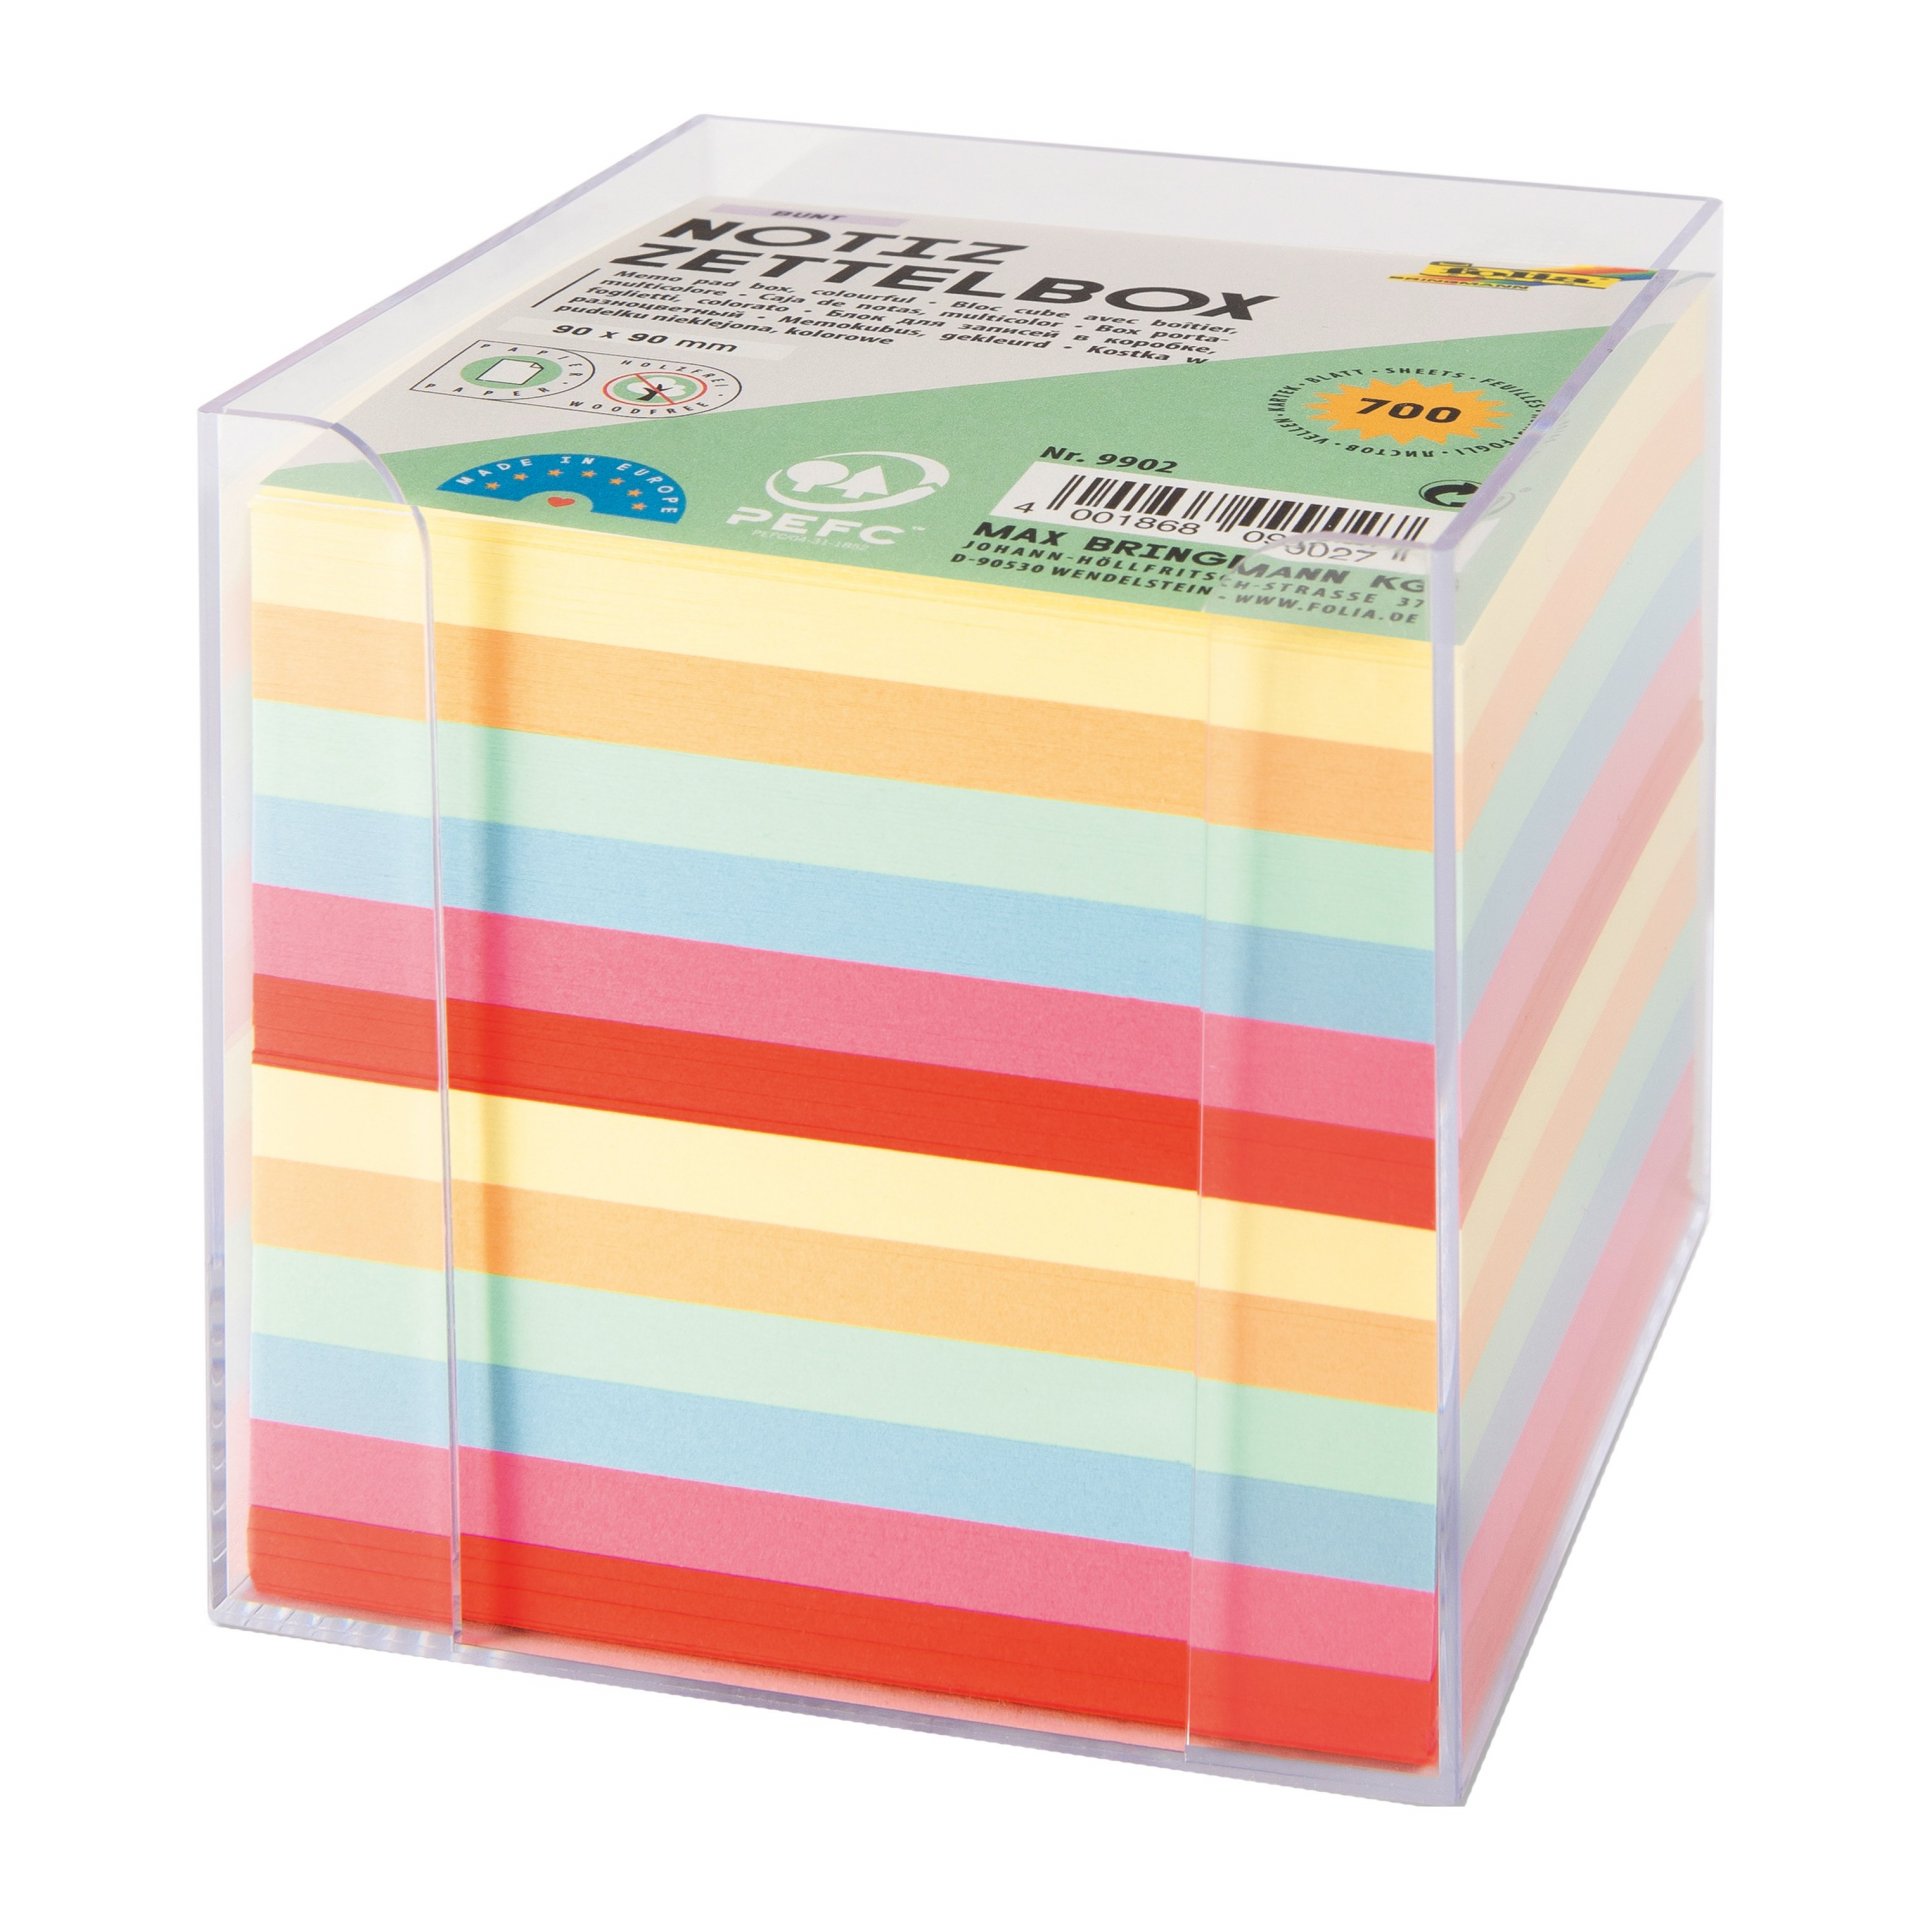 Buy Memo pad in plastic box online at Modulor